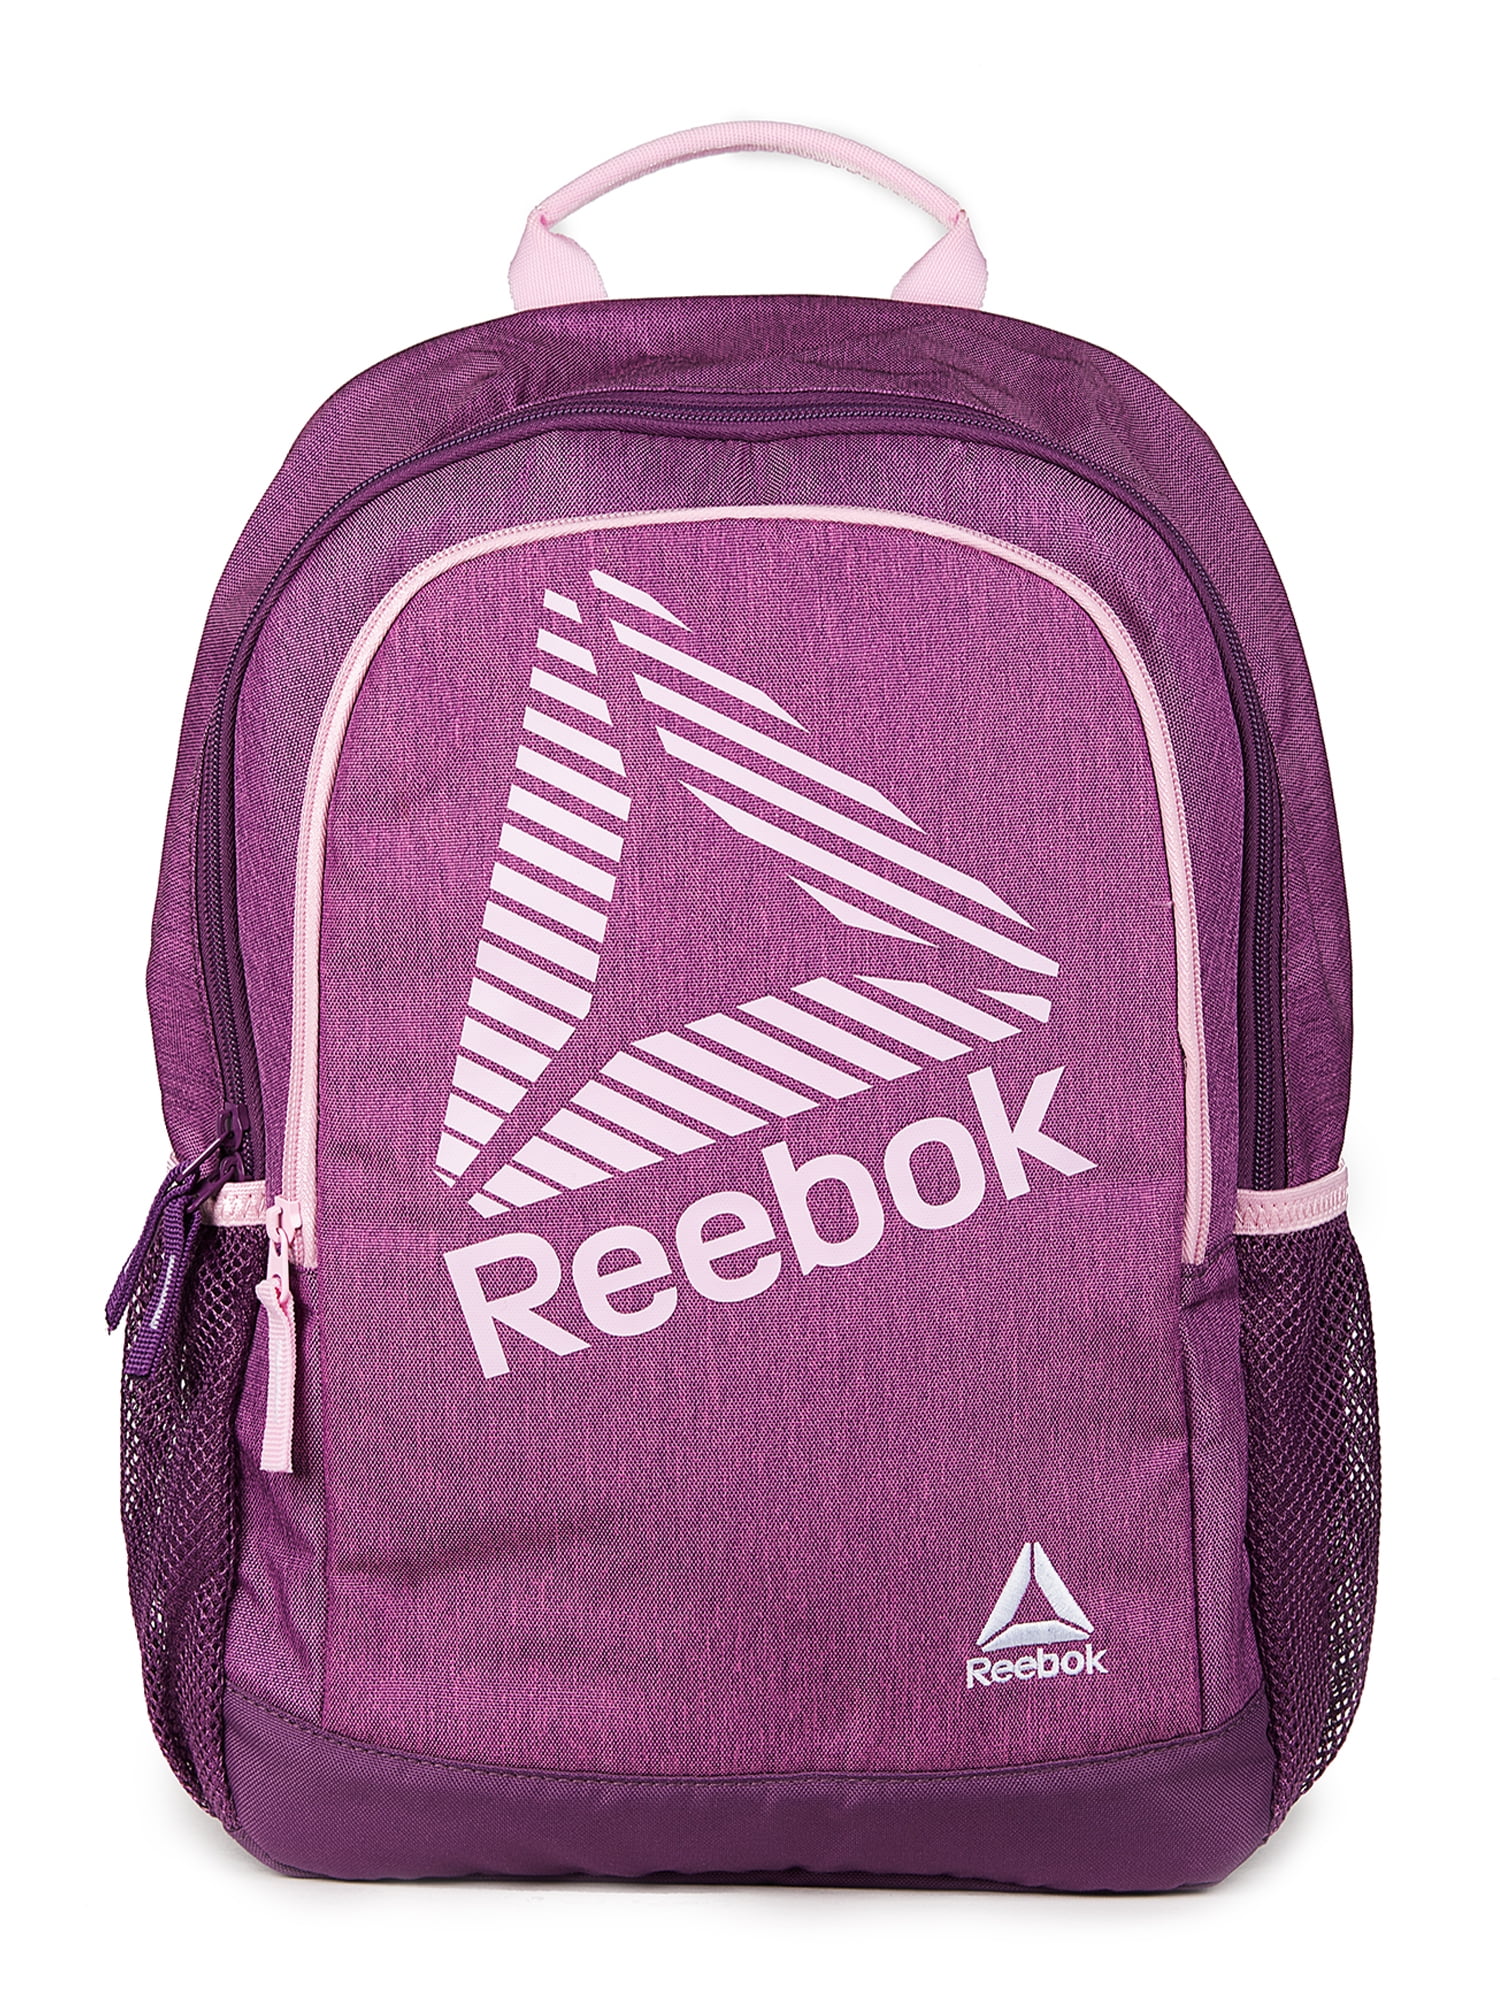 Reebok Unisex Lightweight, Durable, Water-Resistant Marley Backpack - Magenta